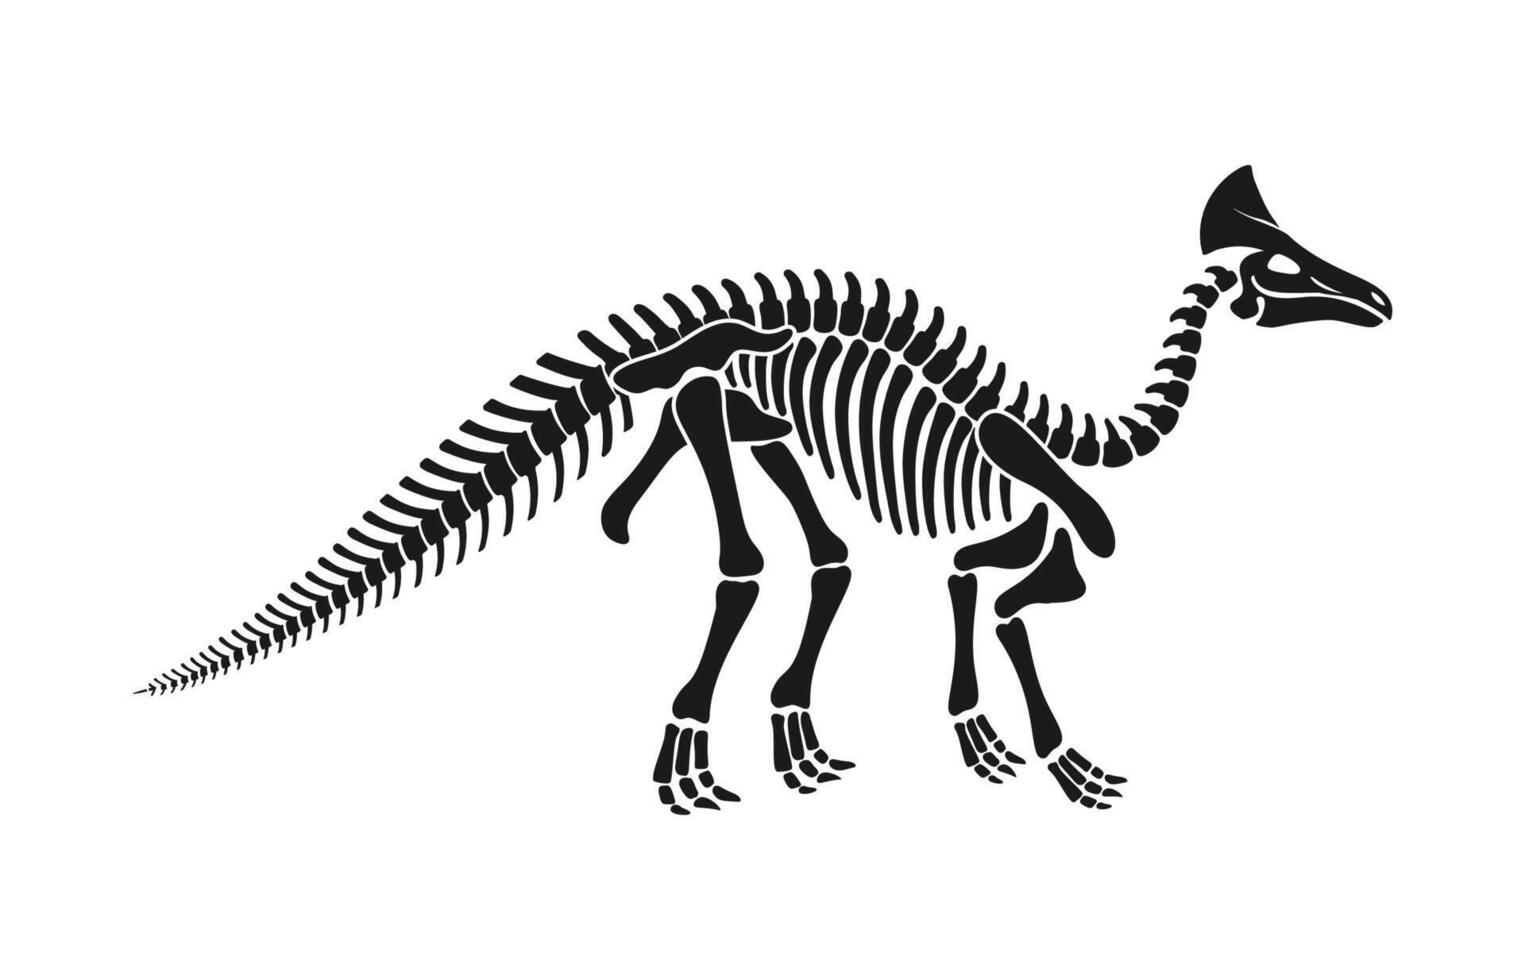 olorotitano dinosauro scheletro fossile, dino ossatura vettore